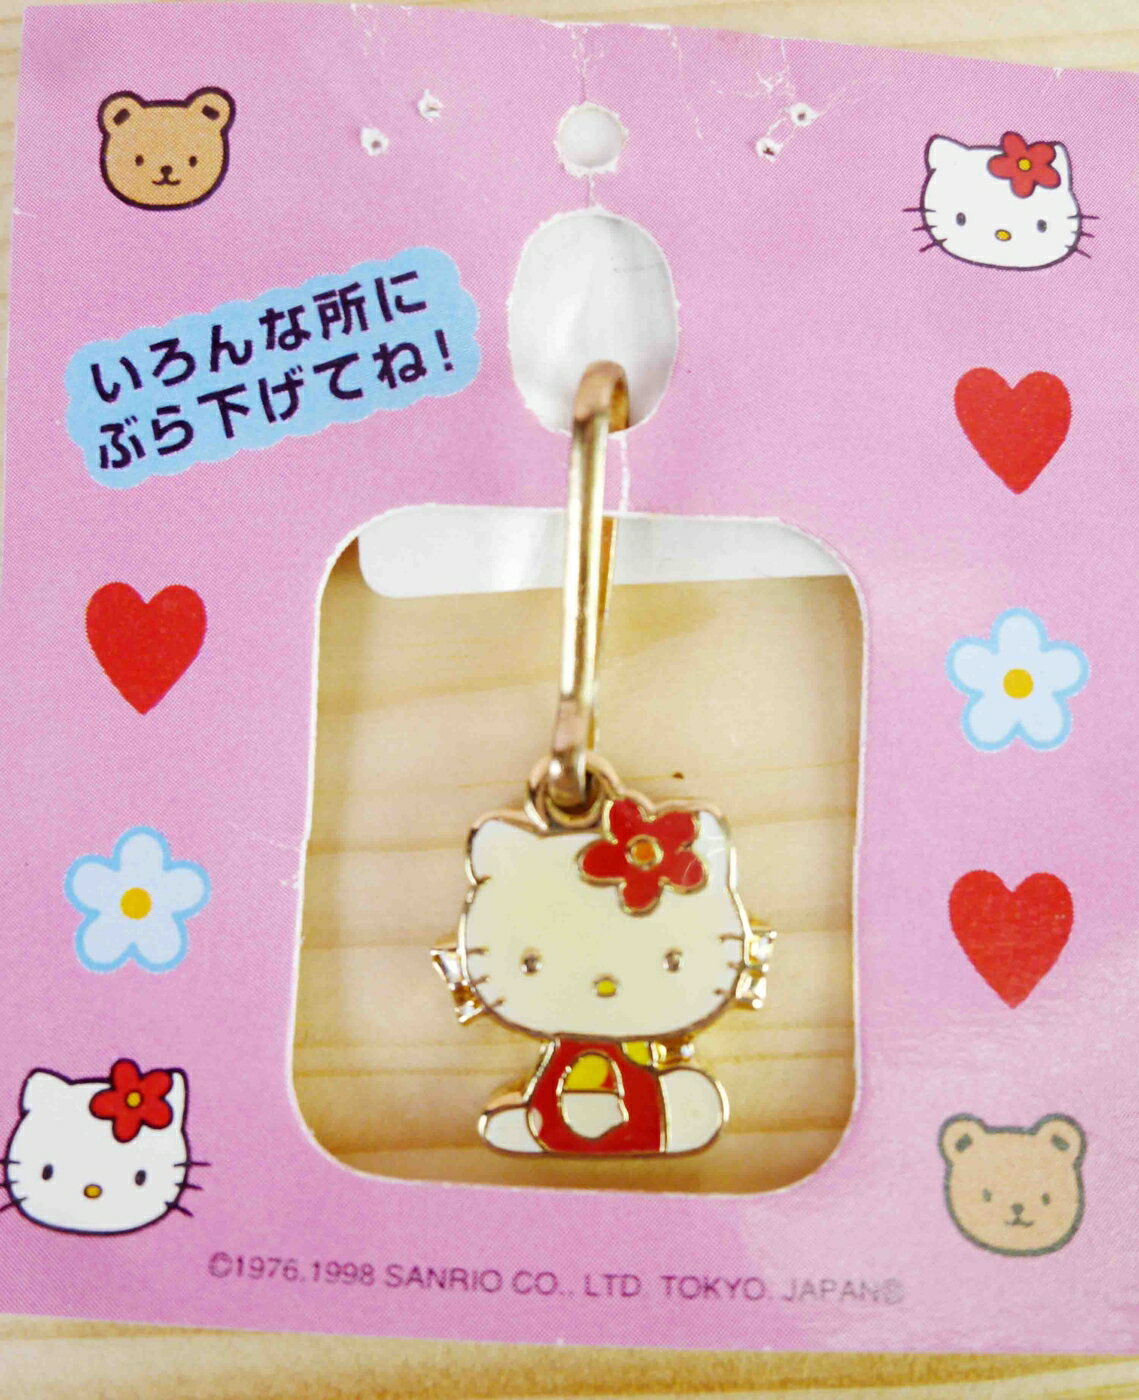 【震撼精品百貨】Hello Kitty 凱蒂貓 KITTY吊飾拉扣-側坐 震撼日式精品百貨